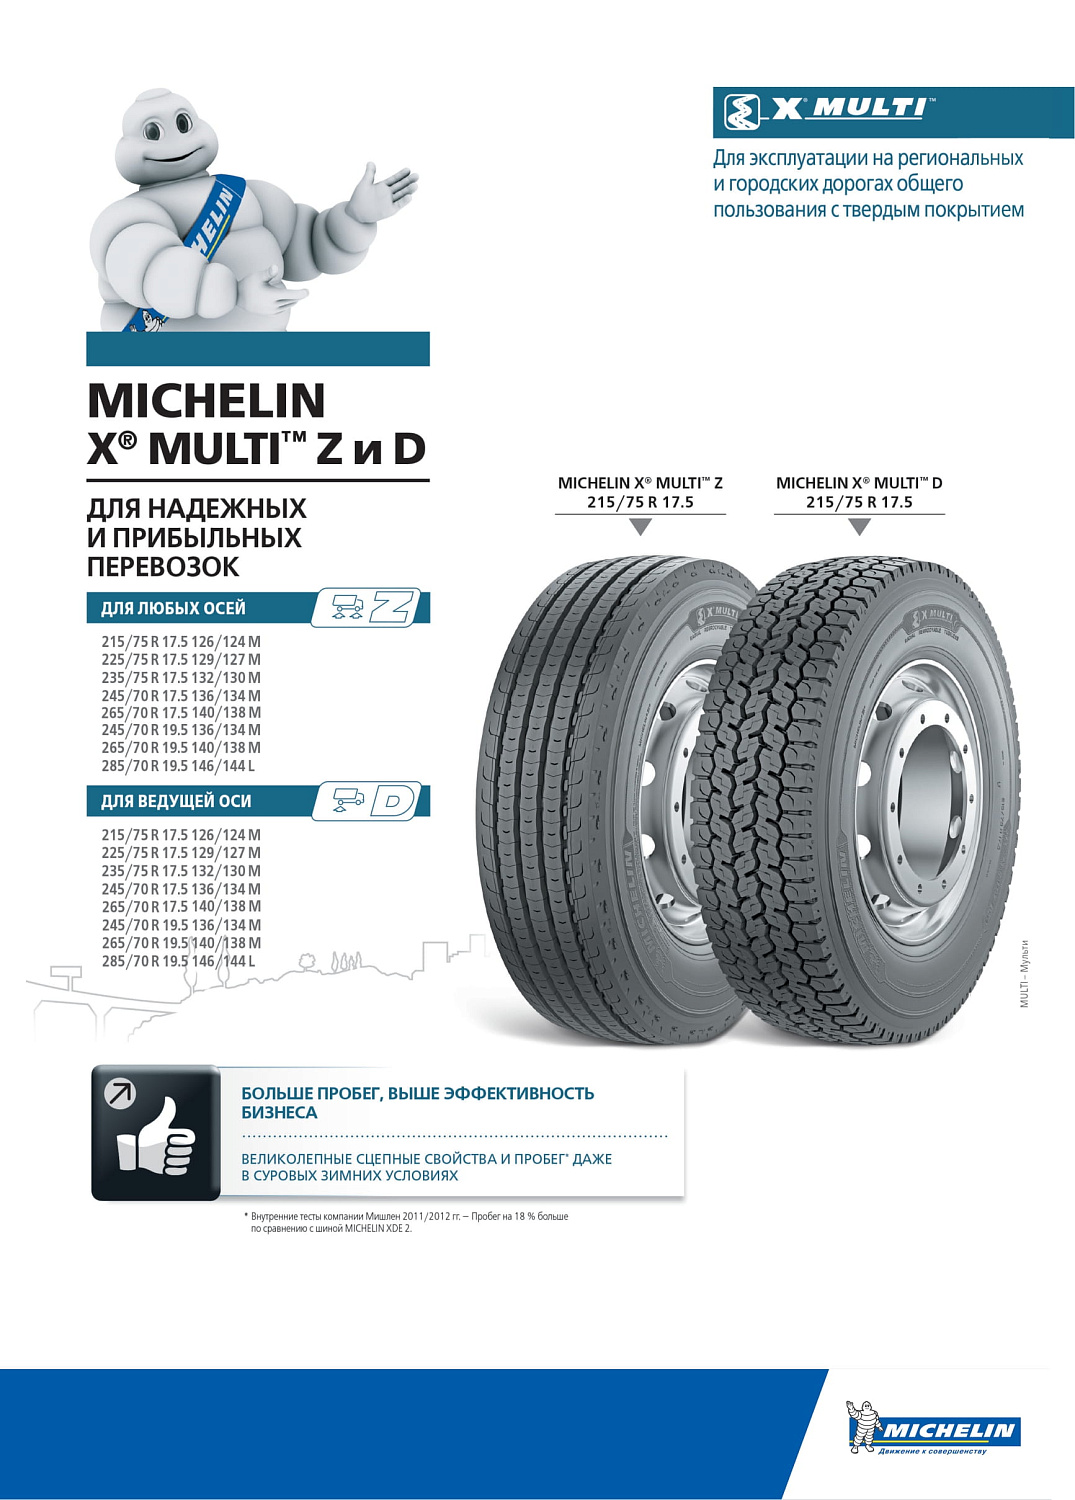 Michelin X Multi Z 245/70 R17.5